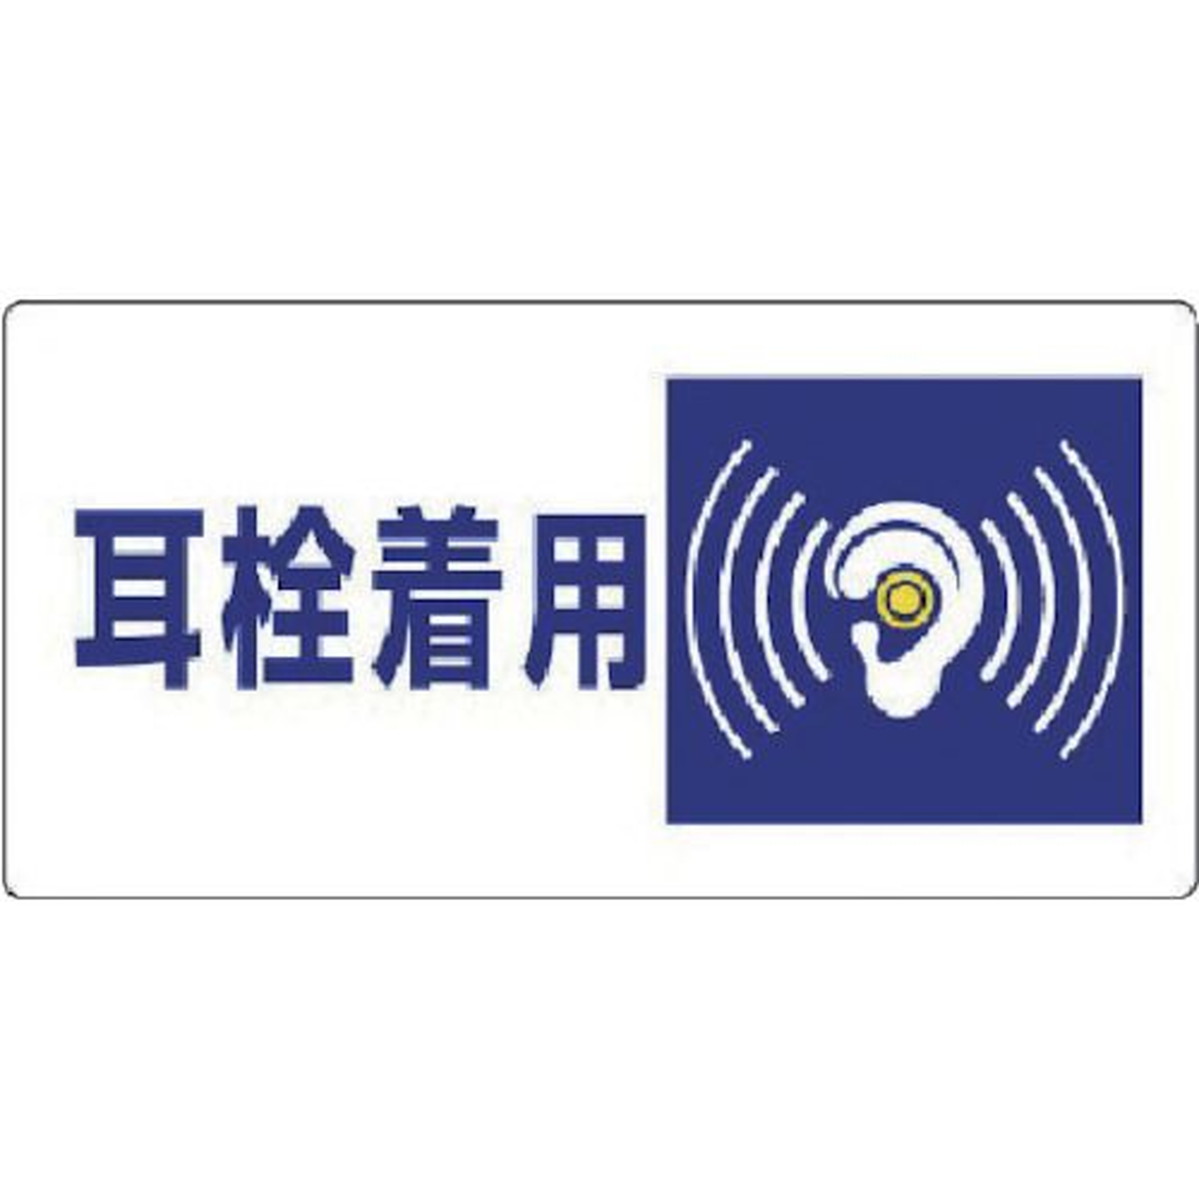 ユニット 騒音管理区分標識 耳栓着用・エコユニボード・300X600 1枚 (820-07)